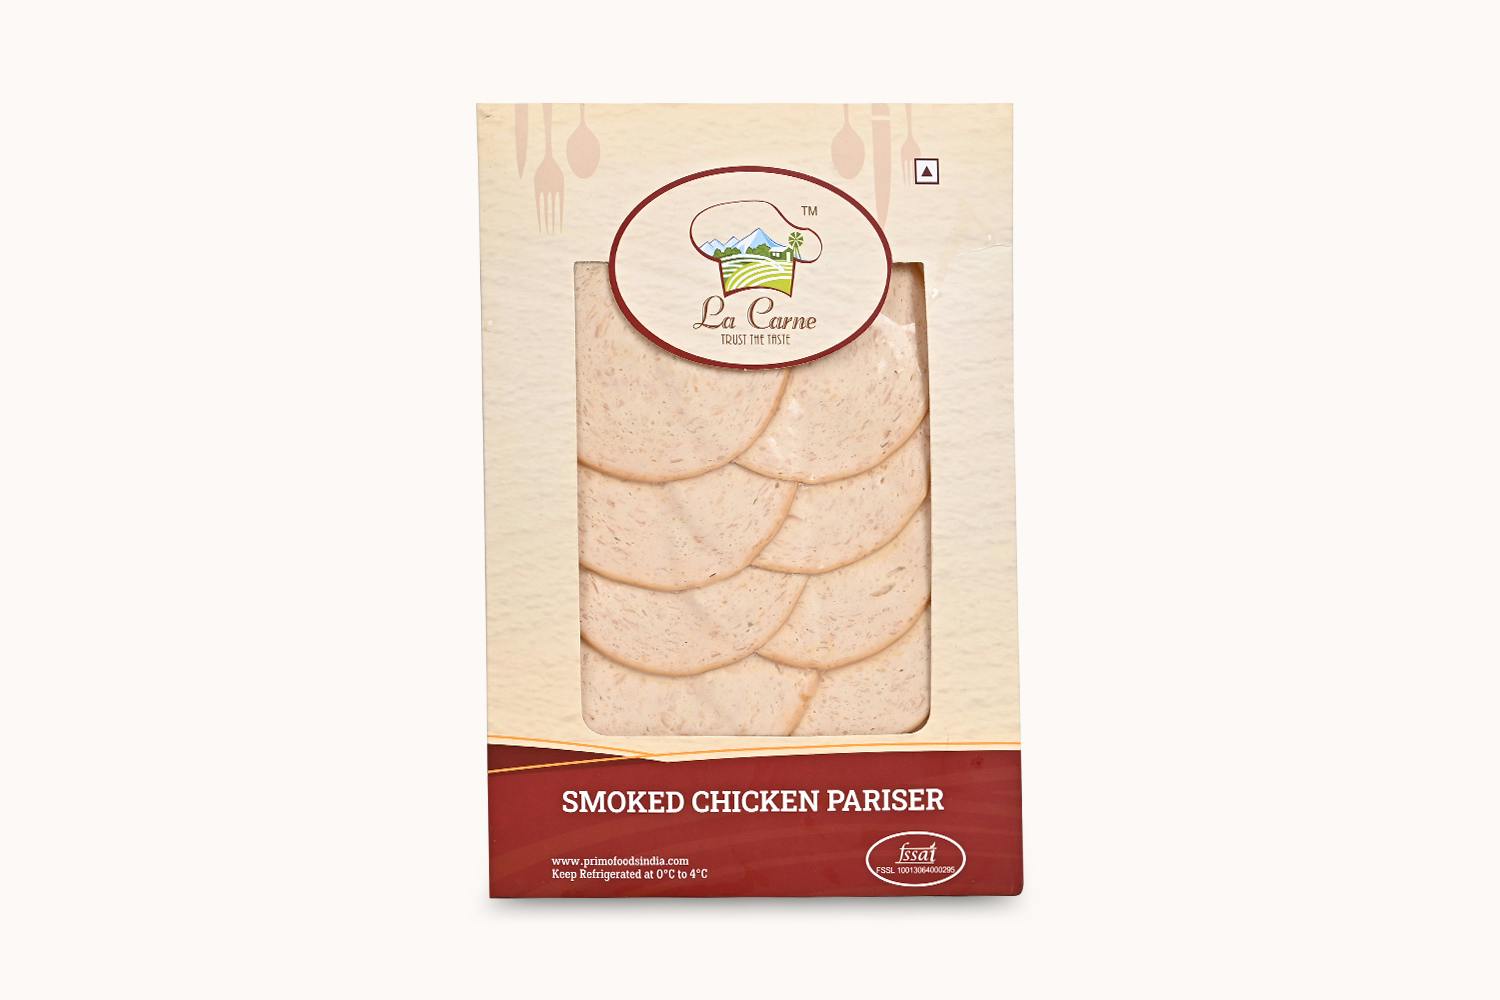 La Carne Smoked Chicken Pariser Ham